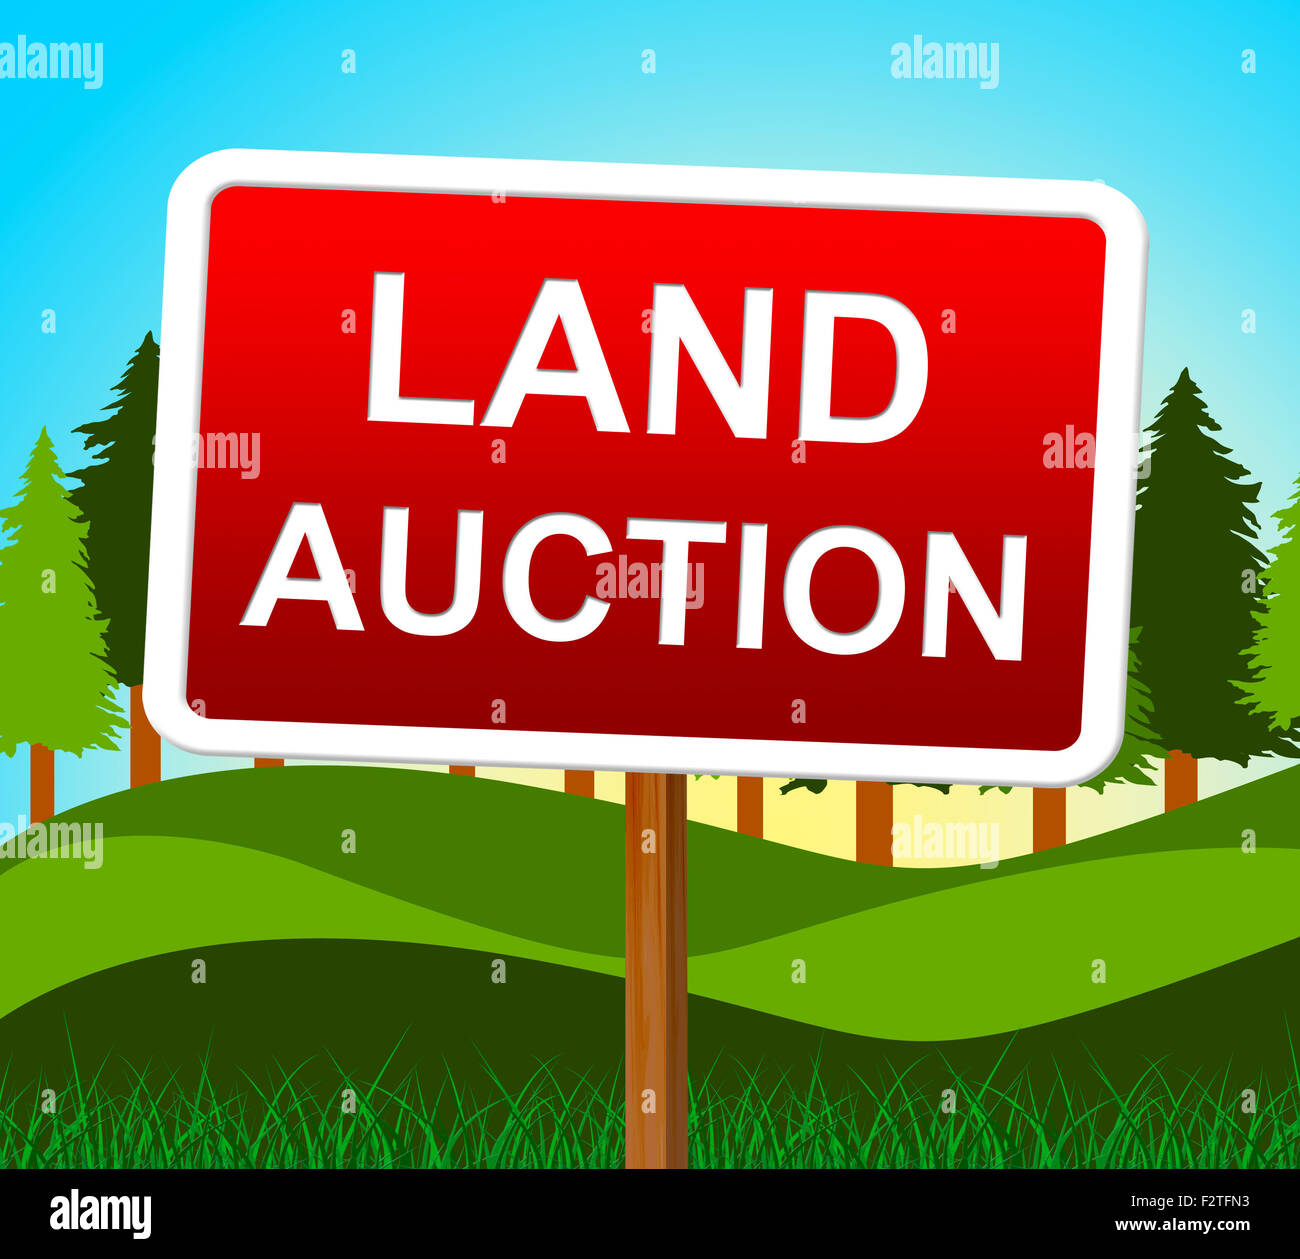 Land Auction Representing Winning Bid And Bids Stock Photo